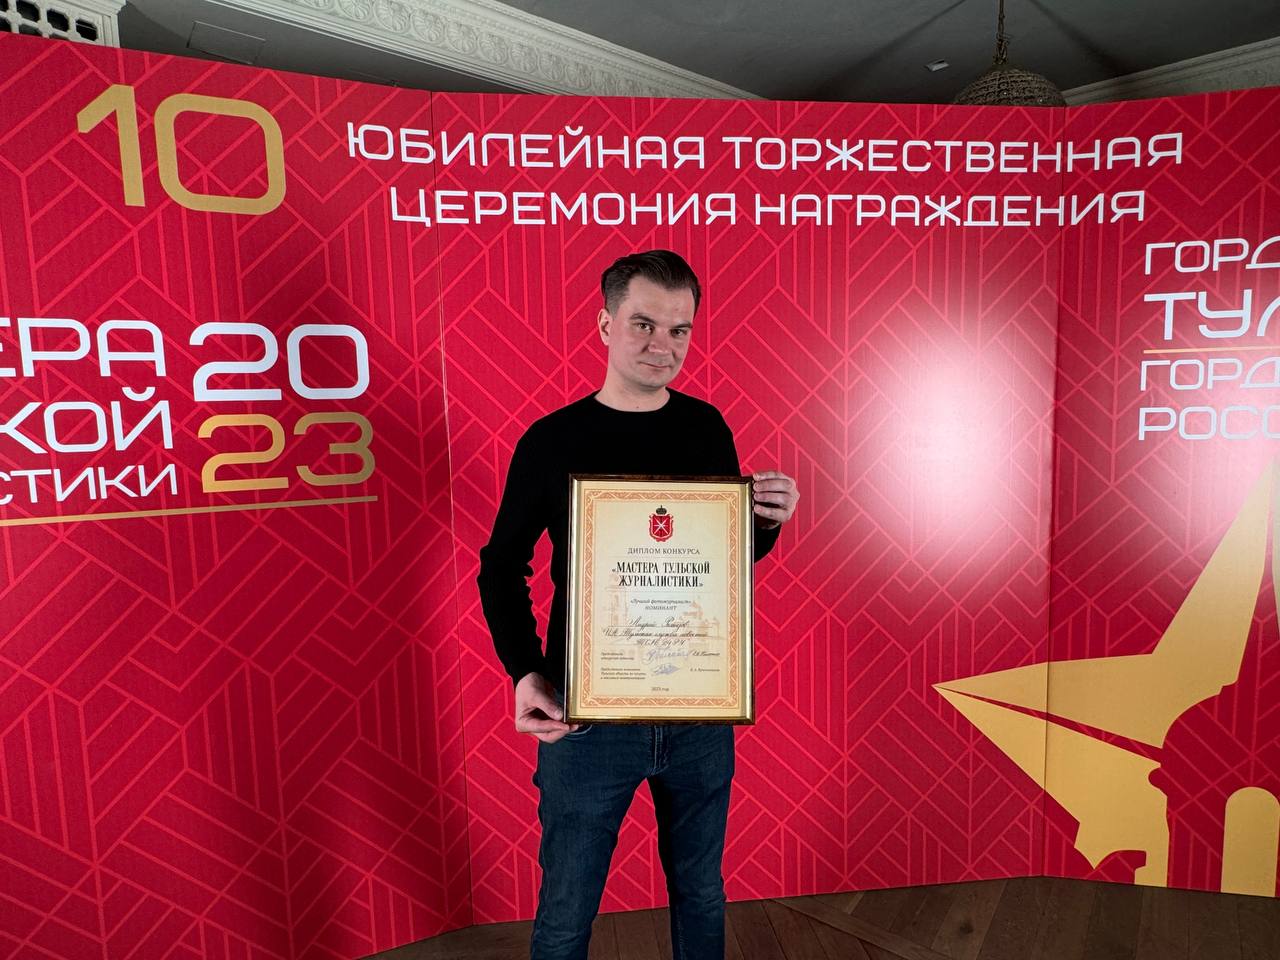 Андрей Ремизов стал призером в номинации конкурса "Мастера тульской журналистики"